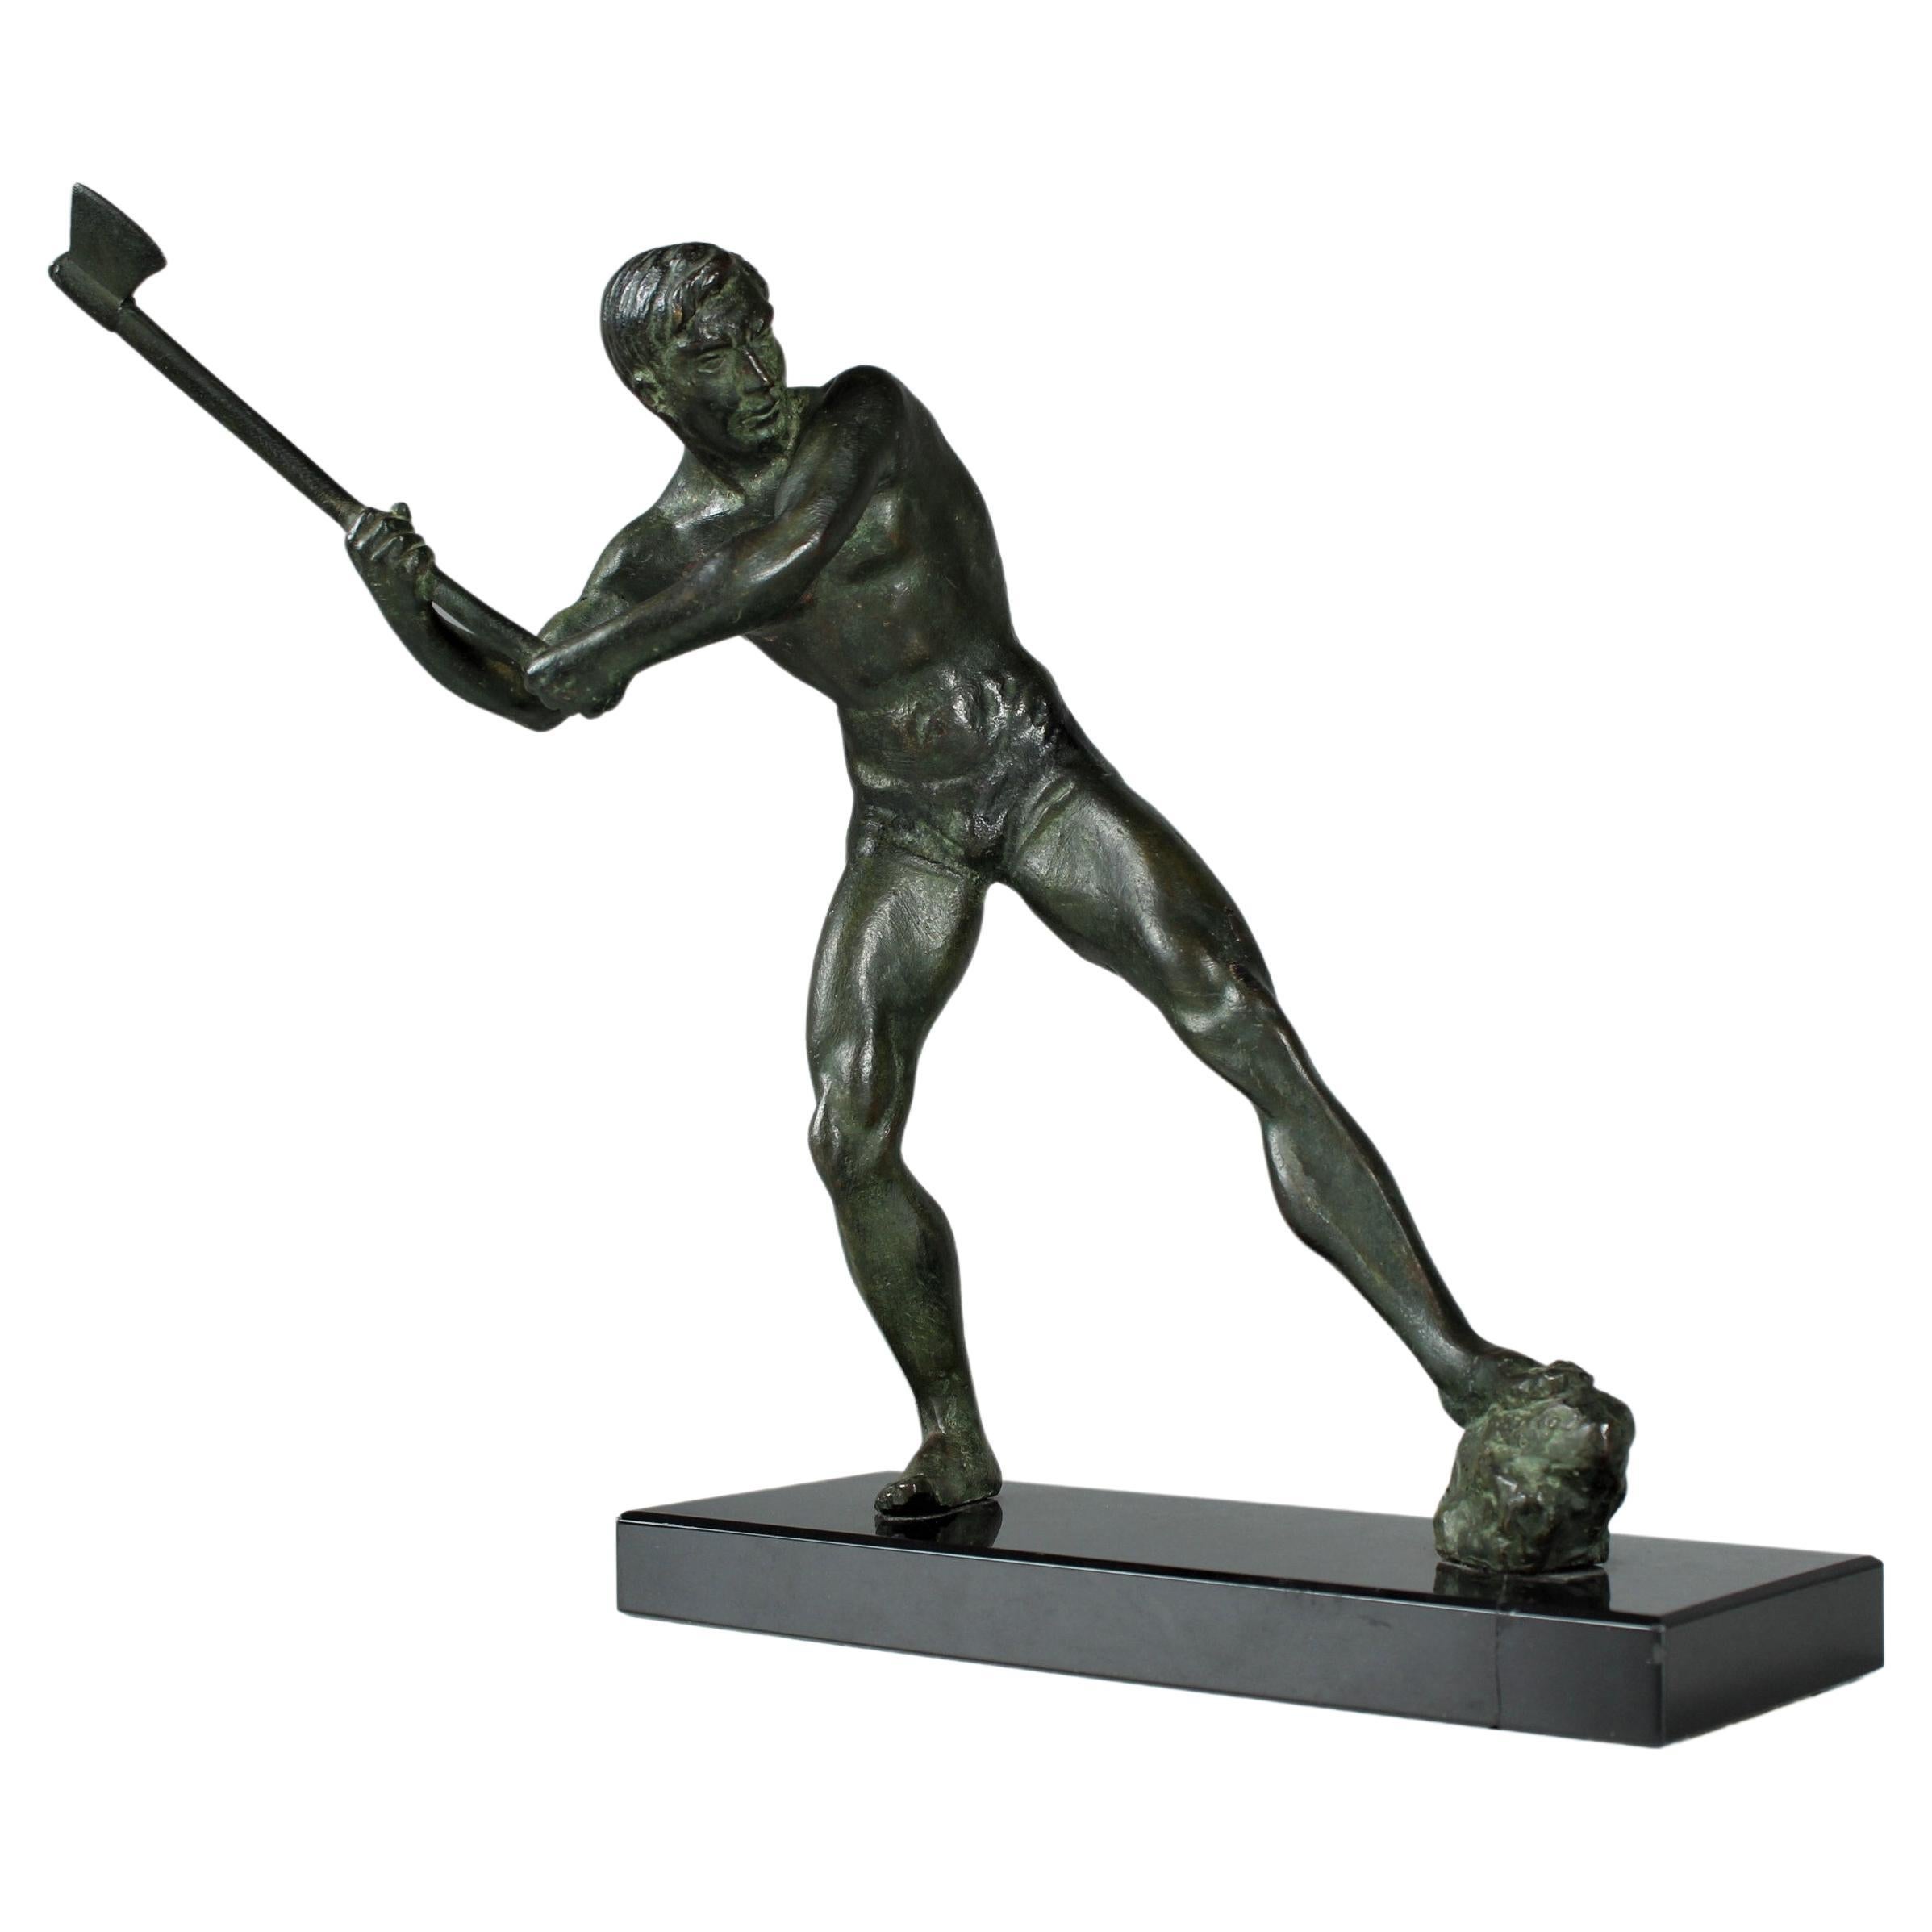 Bronze-, antike Bronzeskulptur eines Holzhandwerkers mit Axe aus dem frühen 20. Jahrhundert, signiert